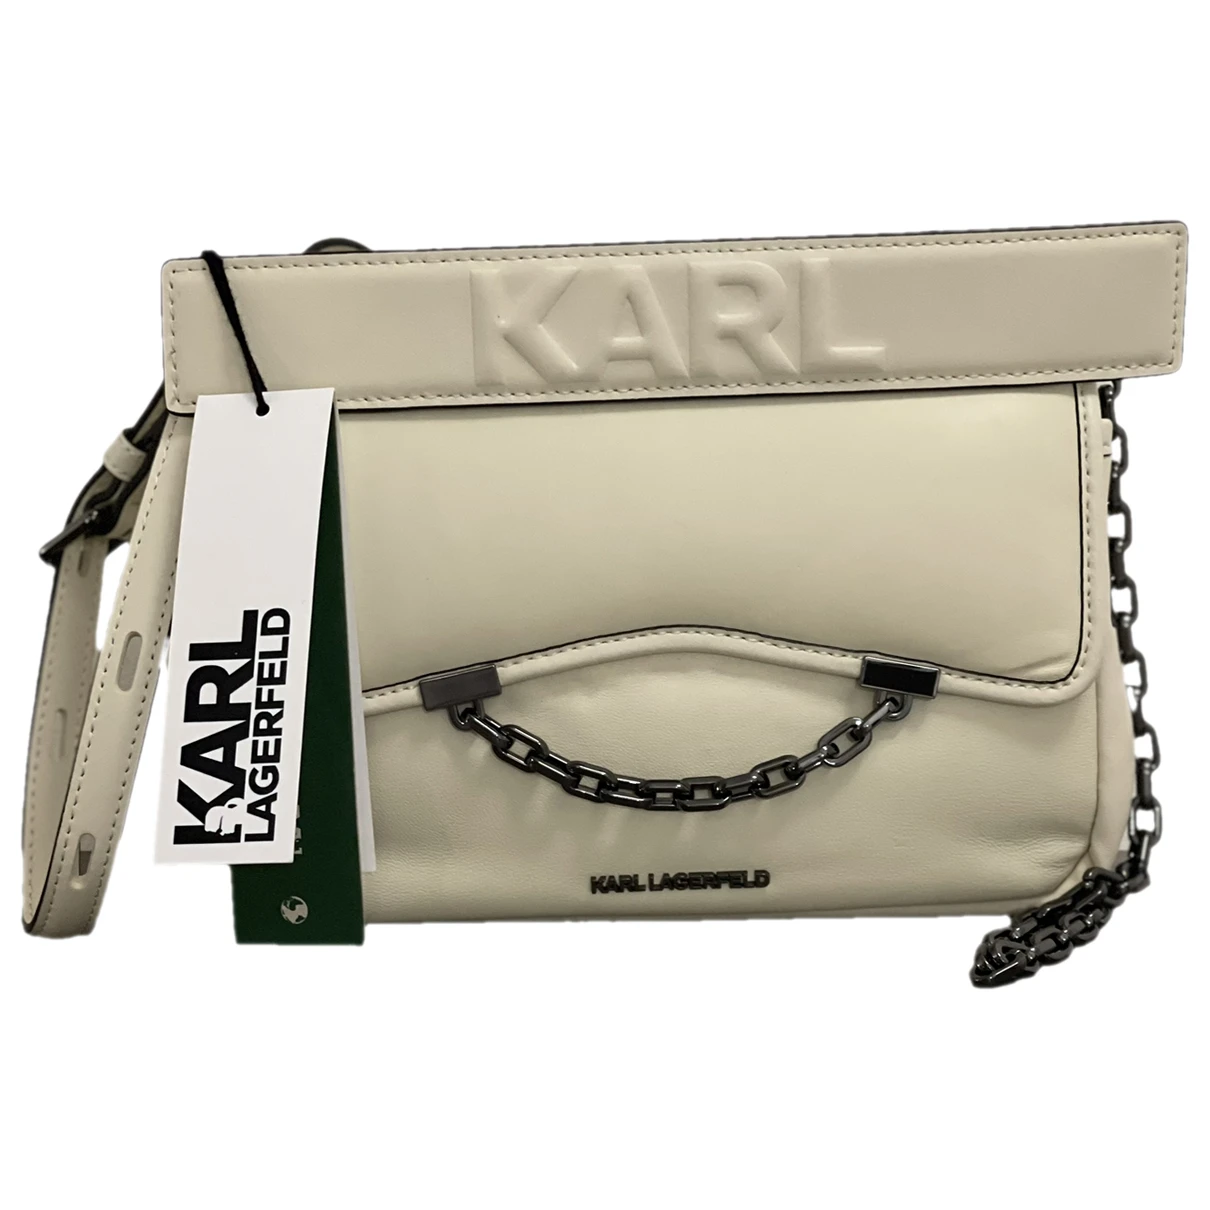 Pre-owned Karl Lagerfeld Leather Handbag In Beige